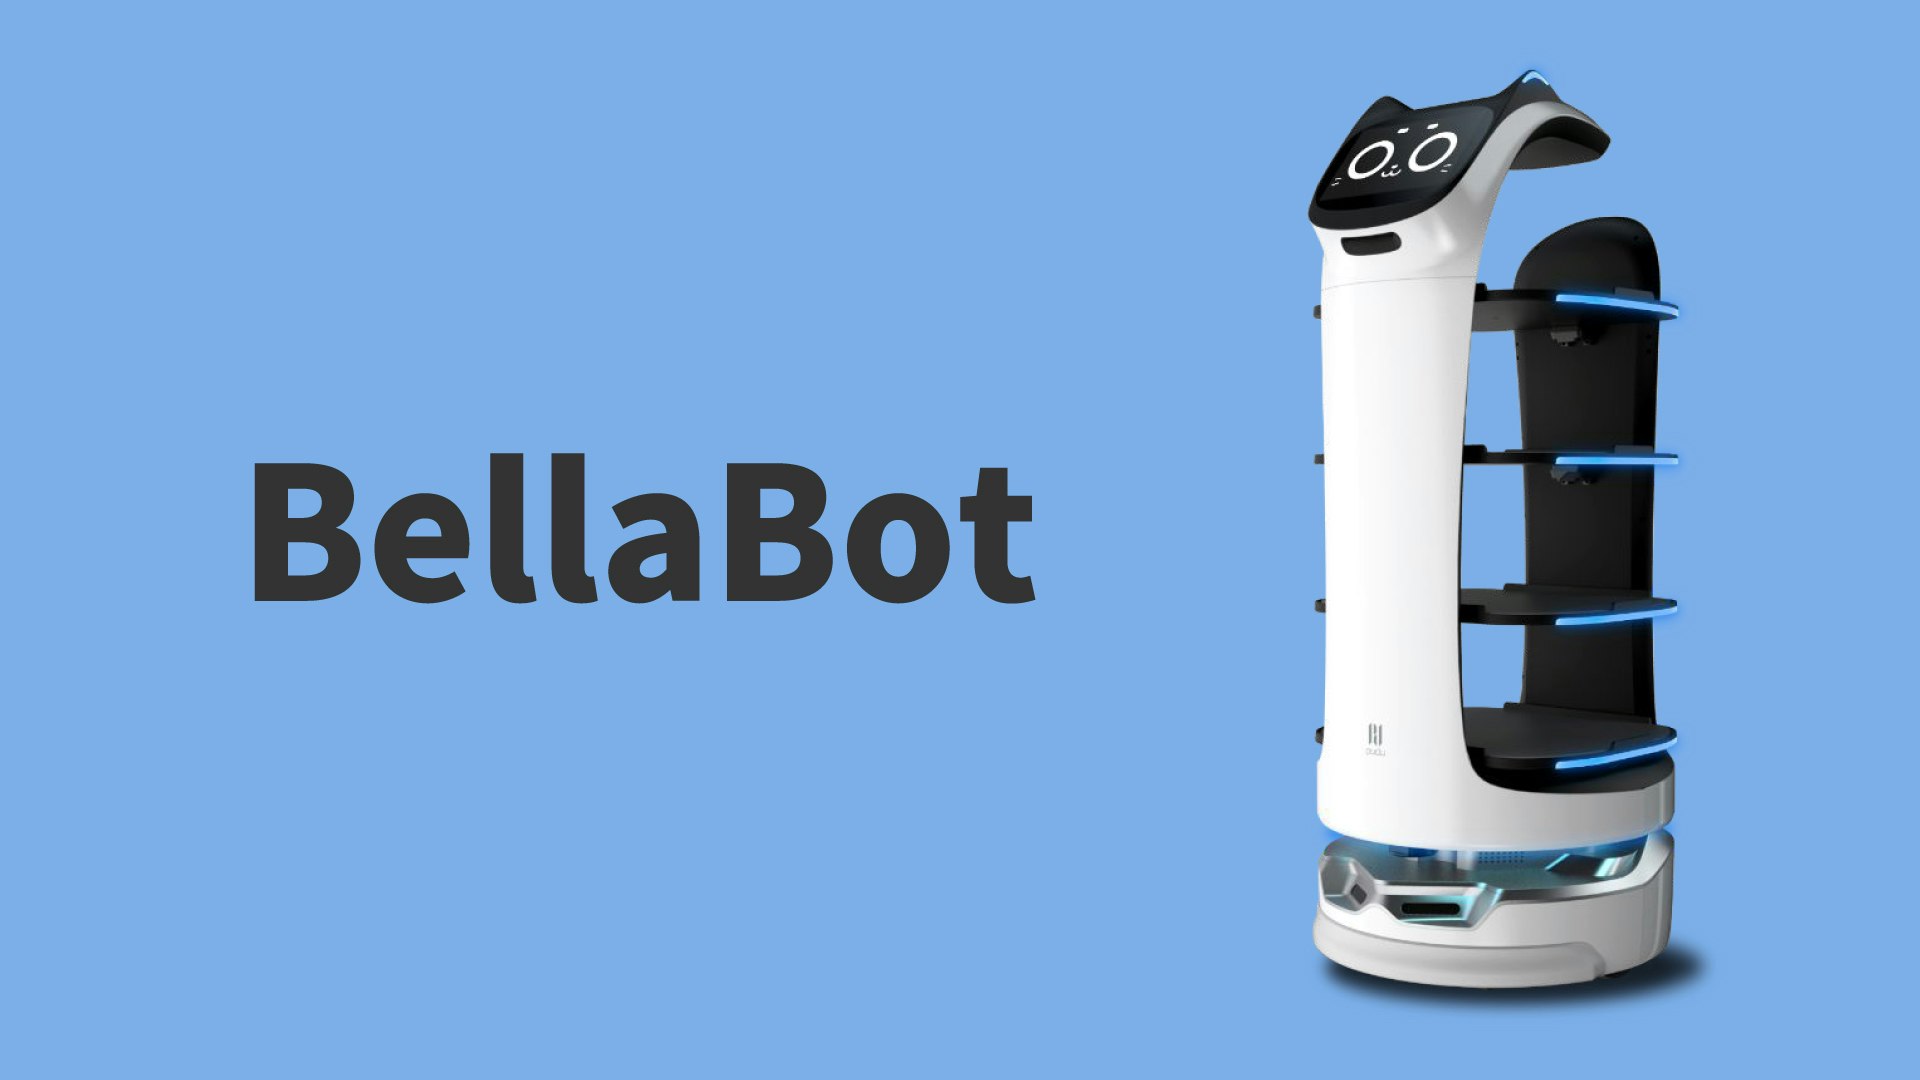 40kgの料理をまる1日運べる
配膳ロボット「BellaBot」